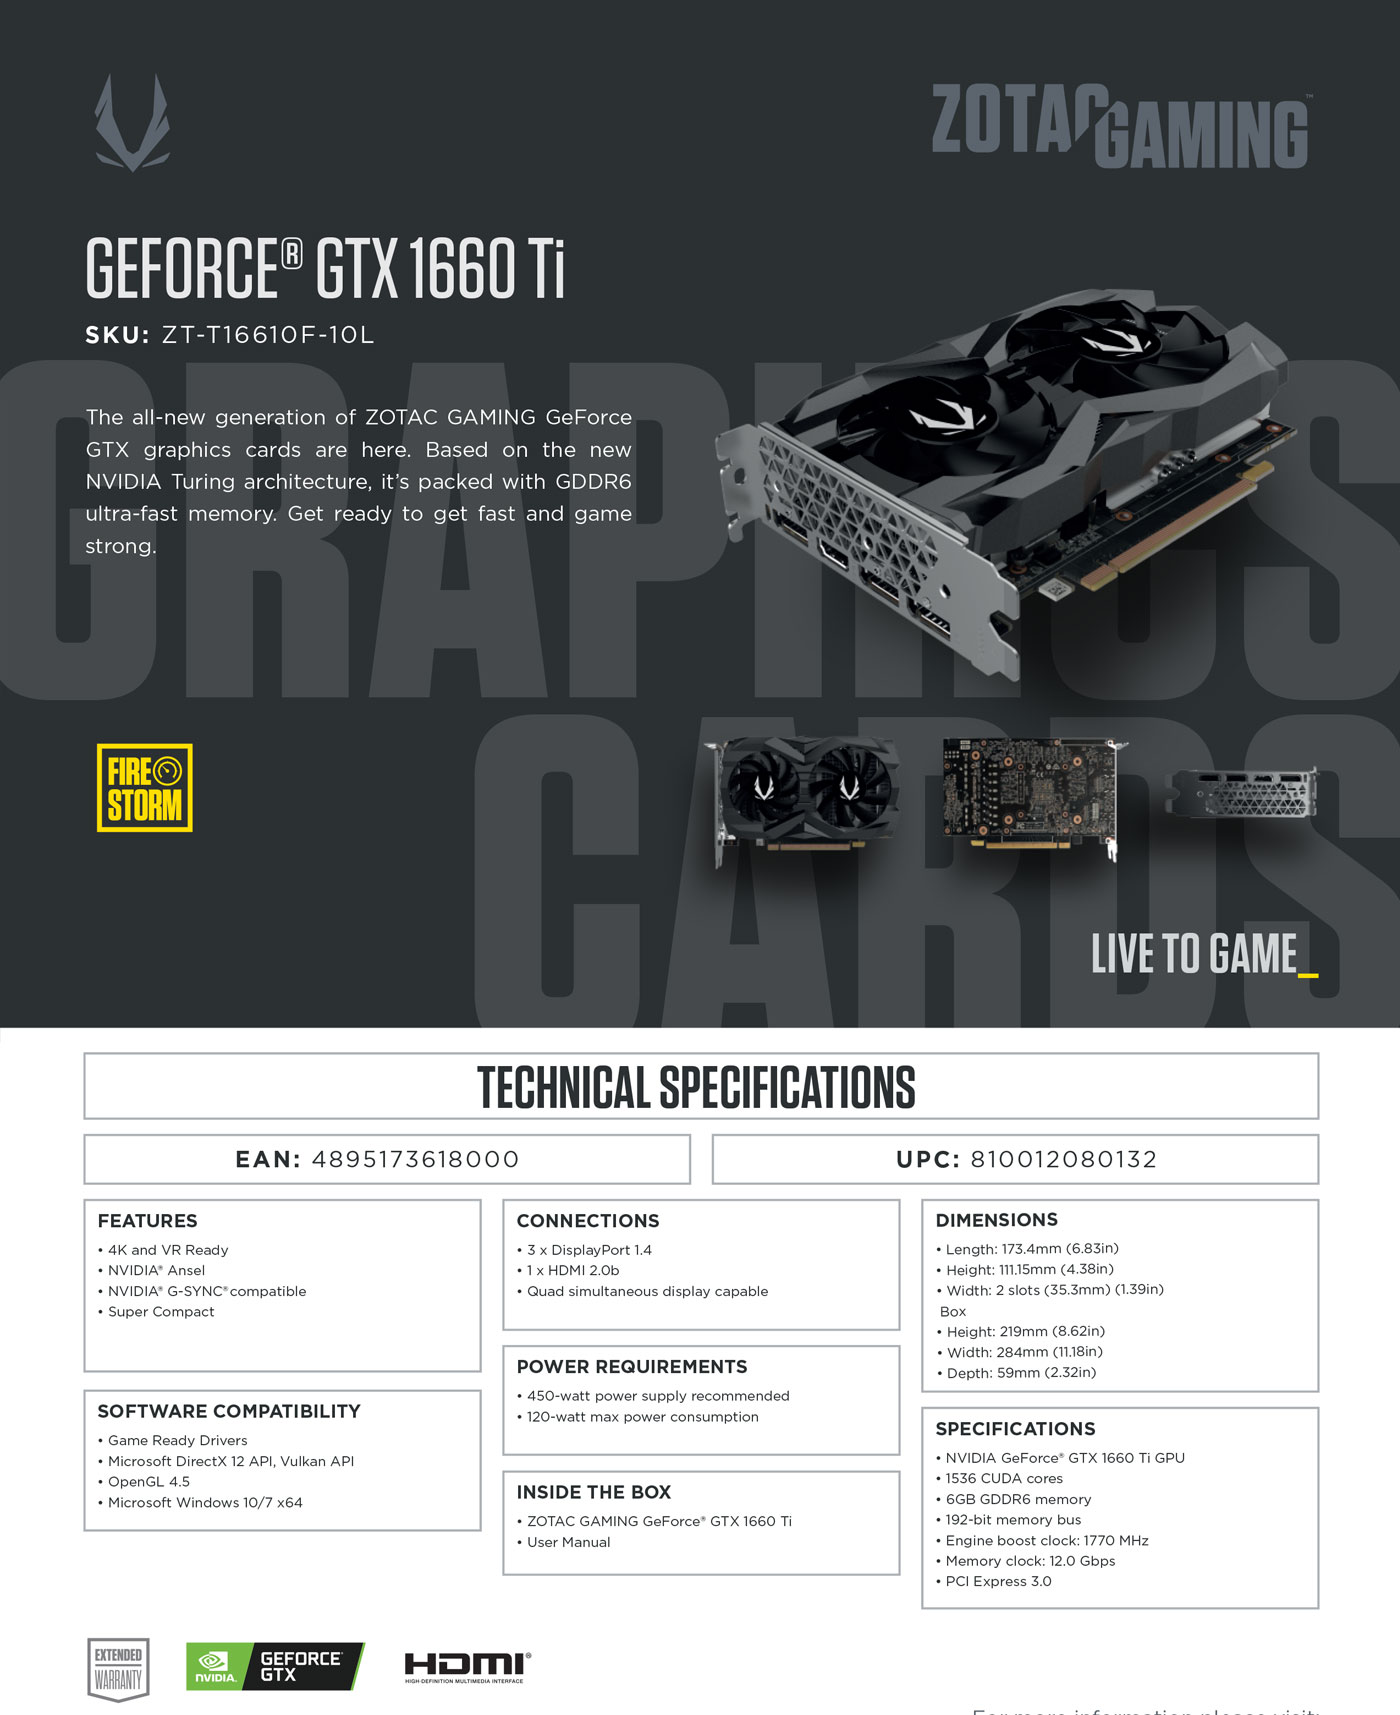  Buy Online Zotac GAMING GeForce GTX 1660Ti Twin Fan 6GB GDDR6 (ZT-T16610F-10L)